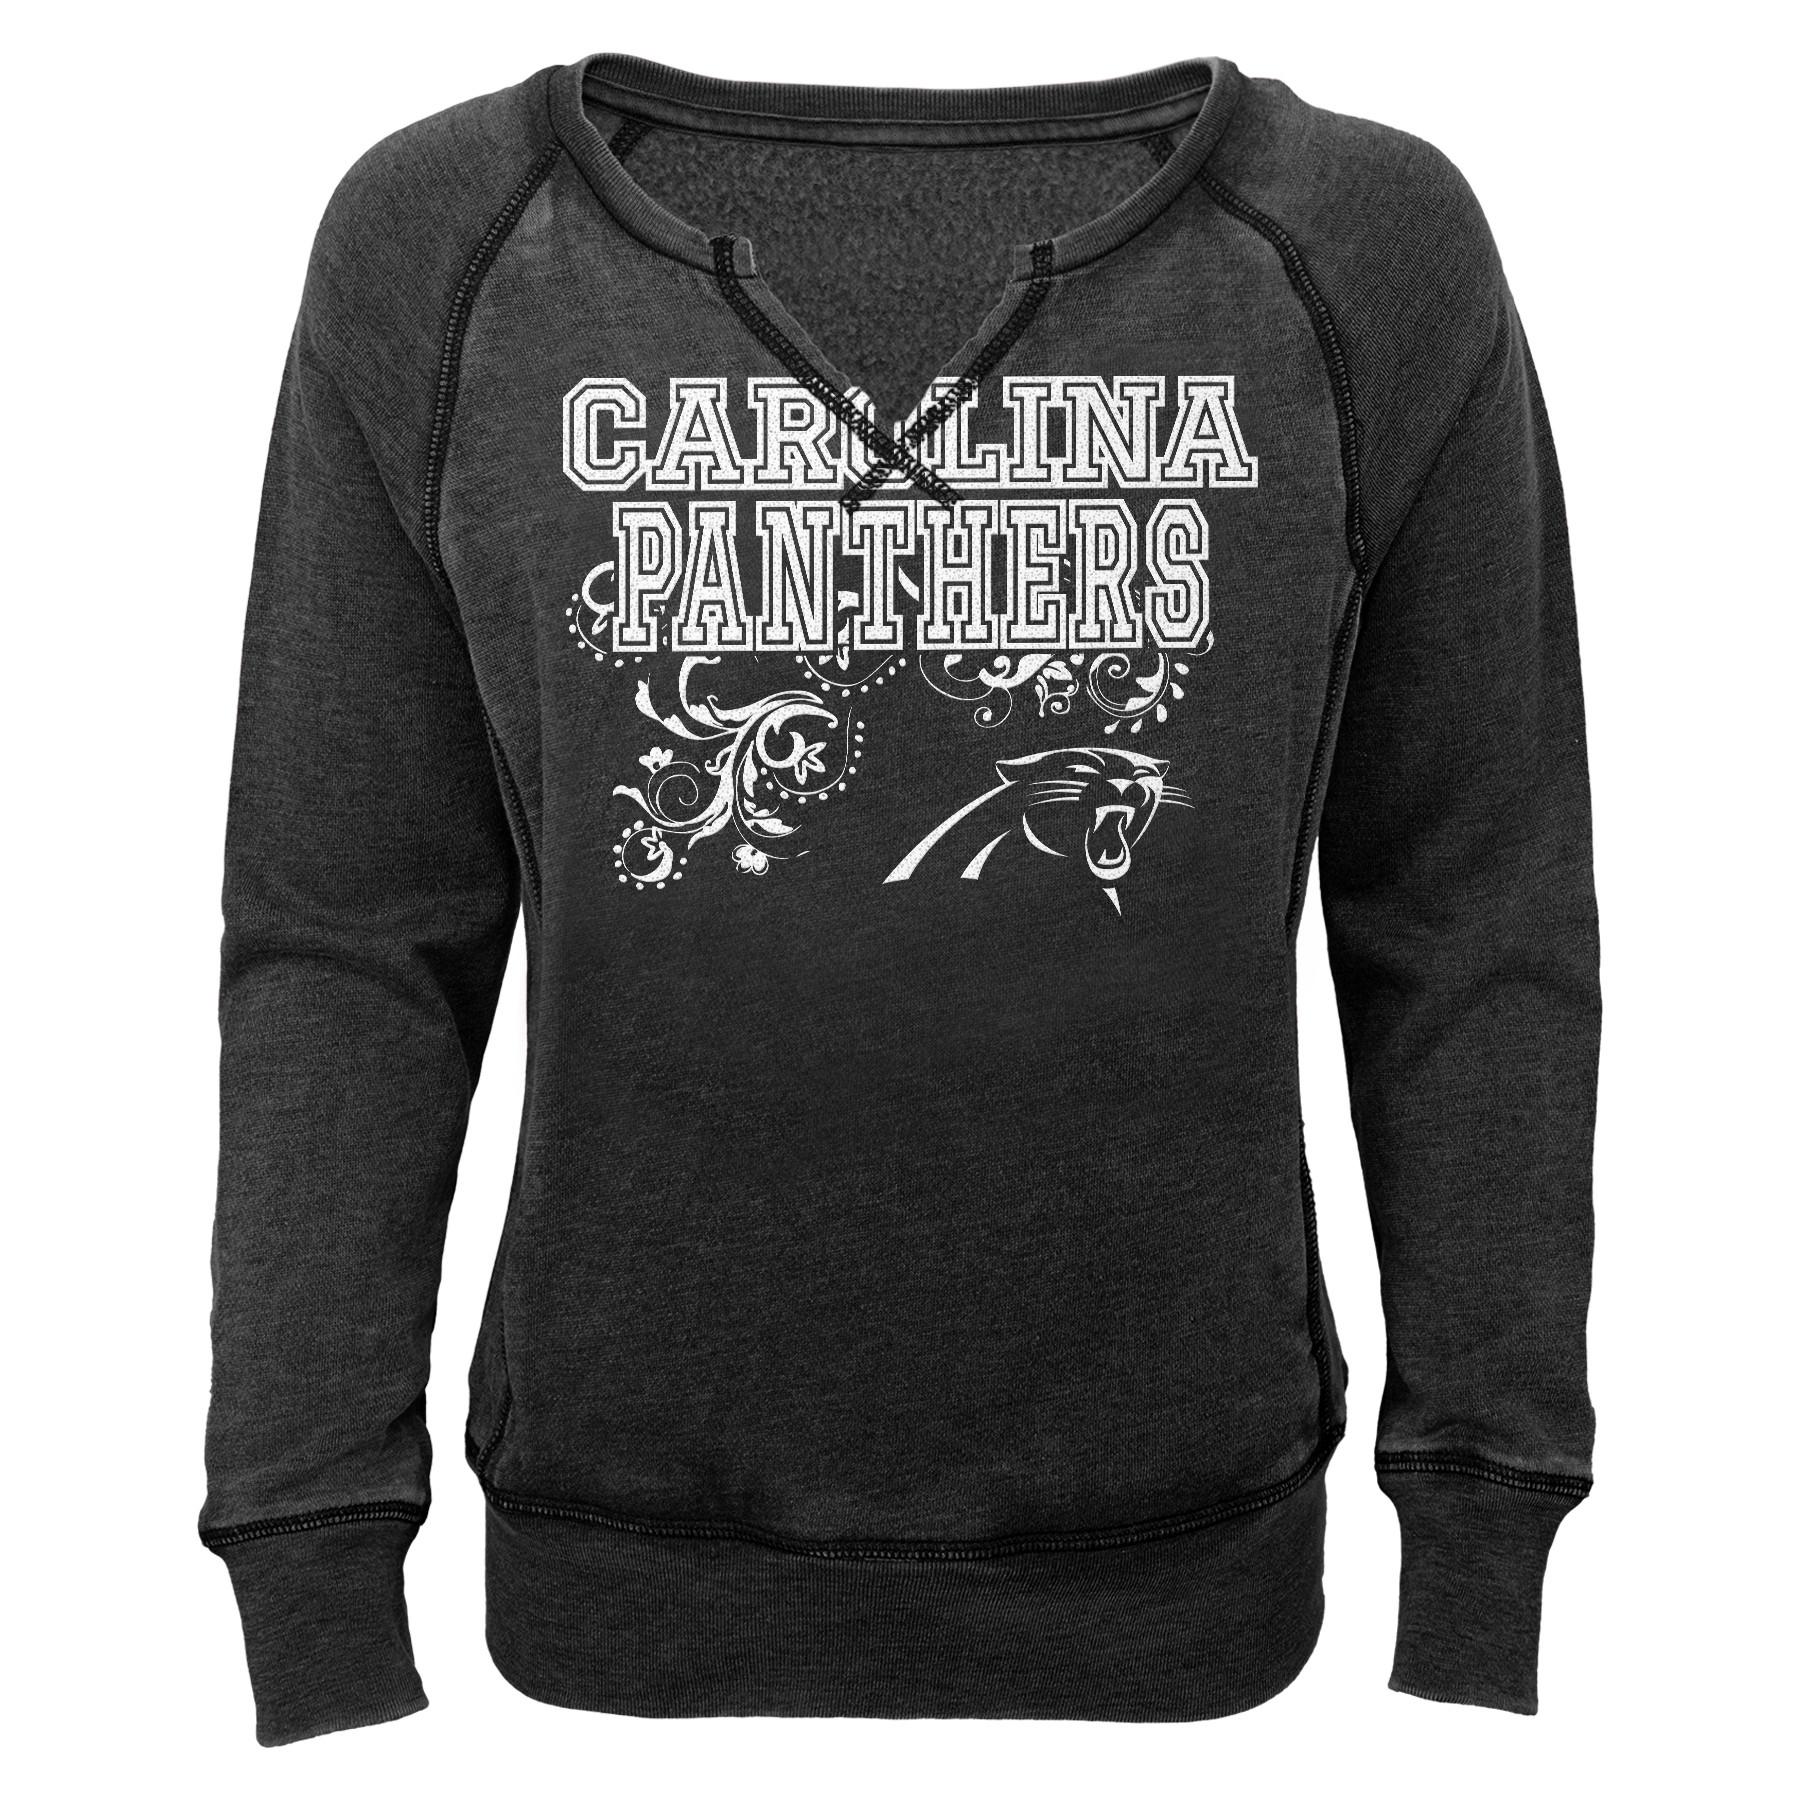 NFL Women's Raglan Sweatshirt - Carolina Panthers